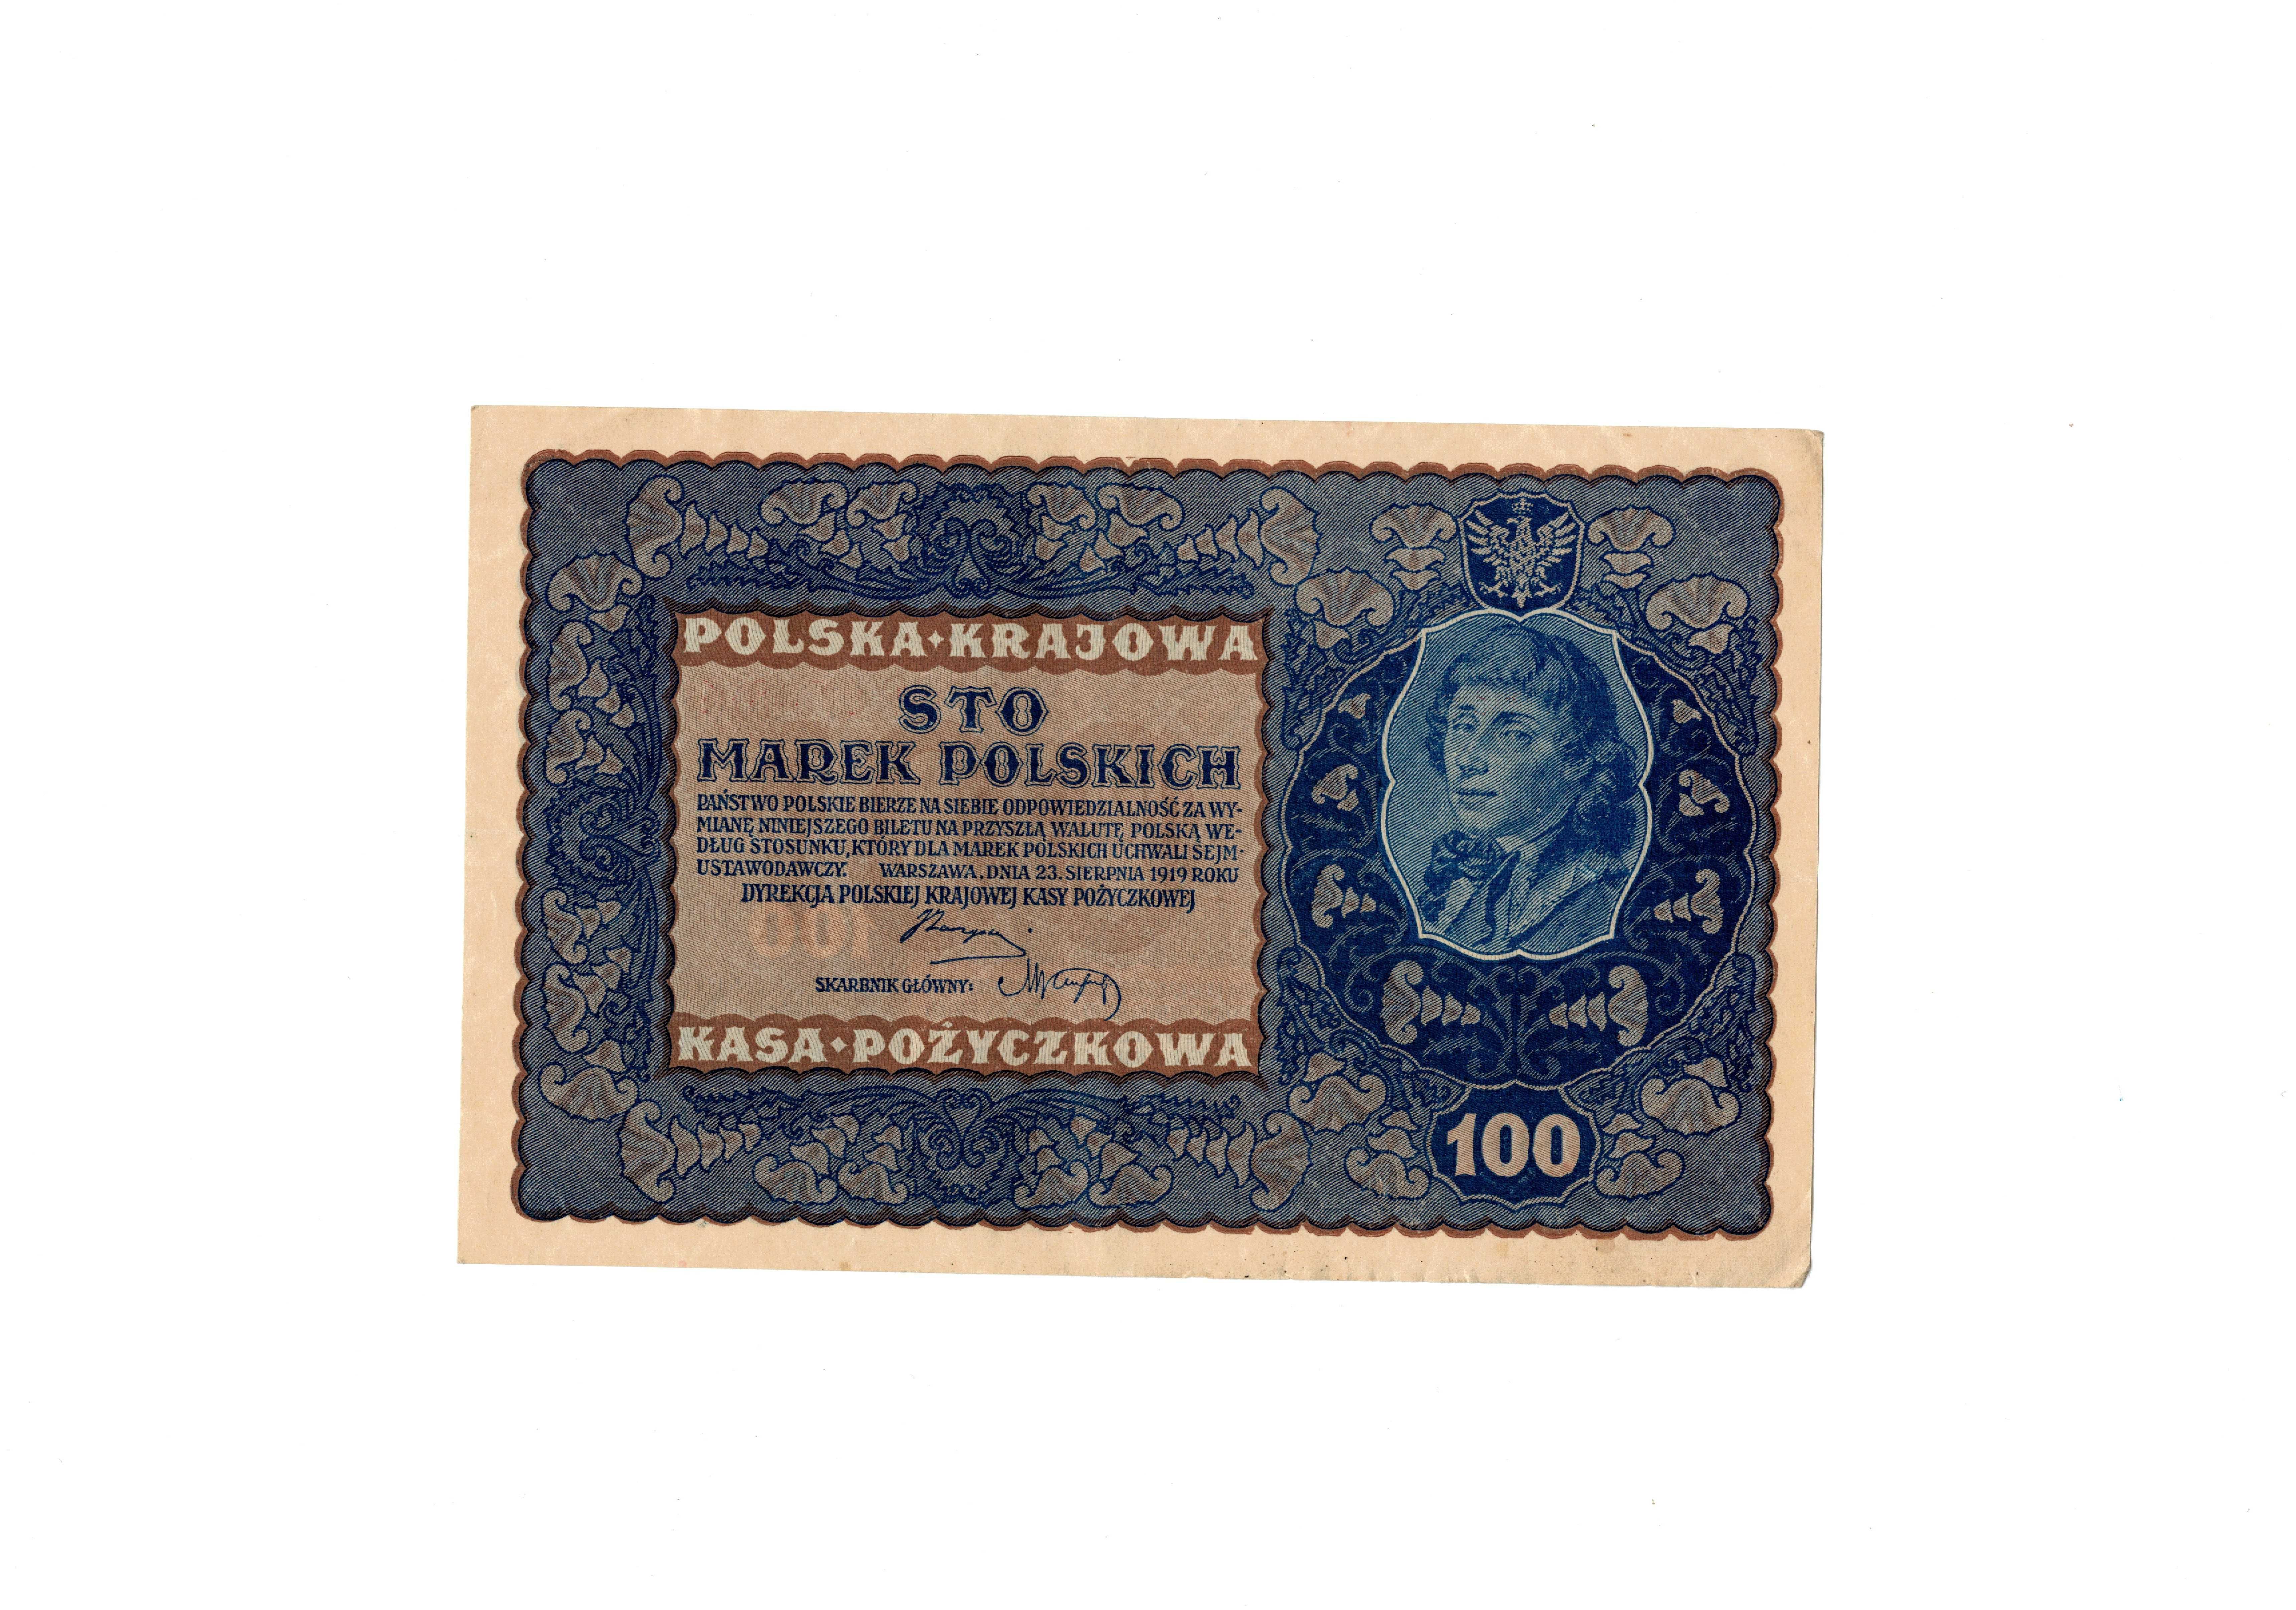 100 marek polskich 1919r BARDZO ŁADNY STAN pakiet 8 sztuk zdjęciaOPIS